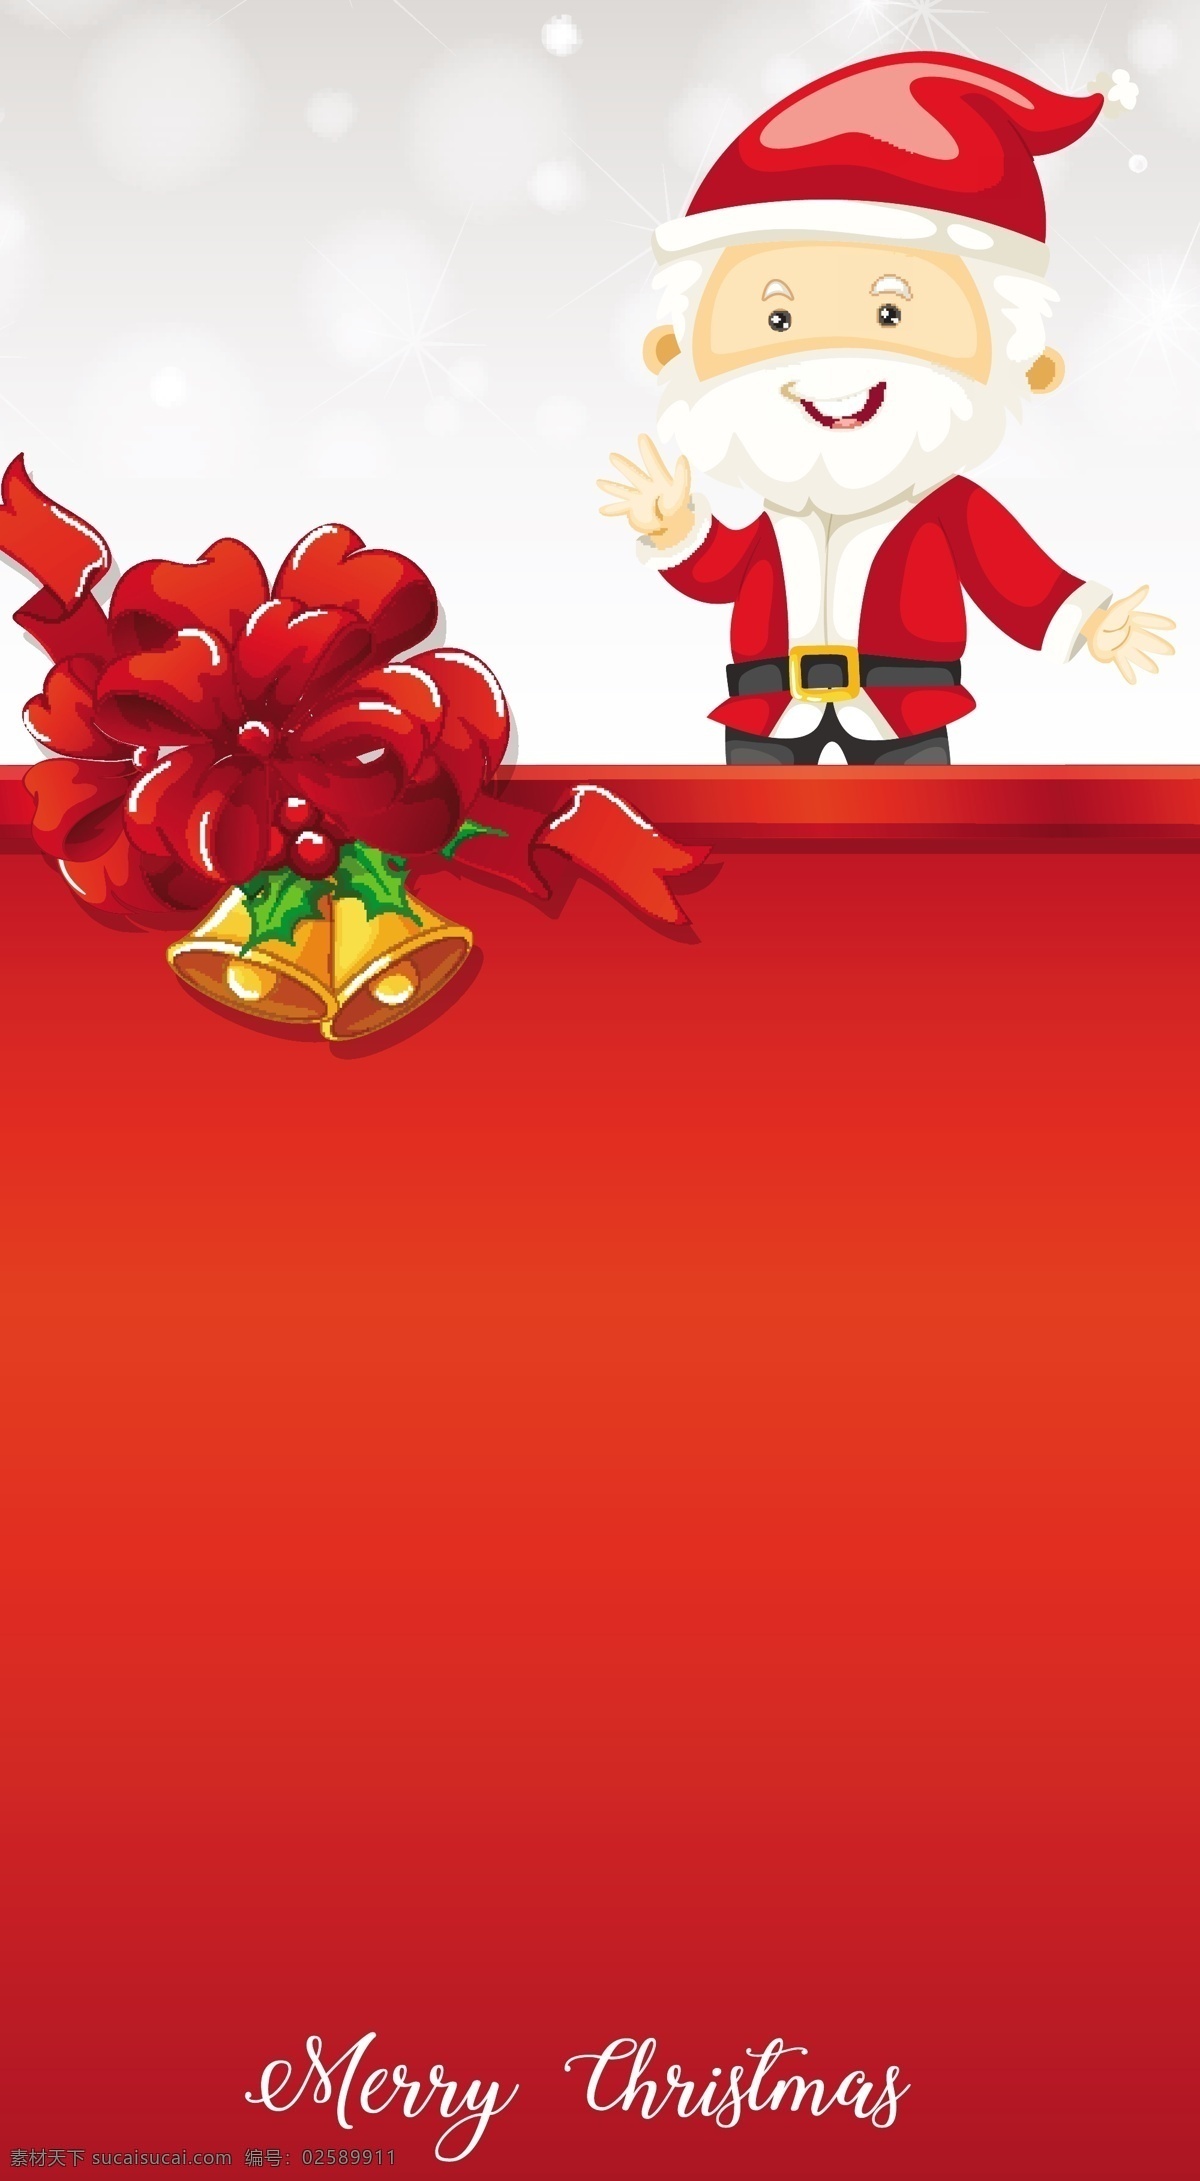 2018 圣诞贺卡 背景 模板 圣诞老人 圣诞素材 圣诞节 节日素材 圣诞贺卡模板 铃铛 圣诞元素 圣诞